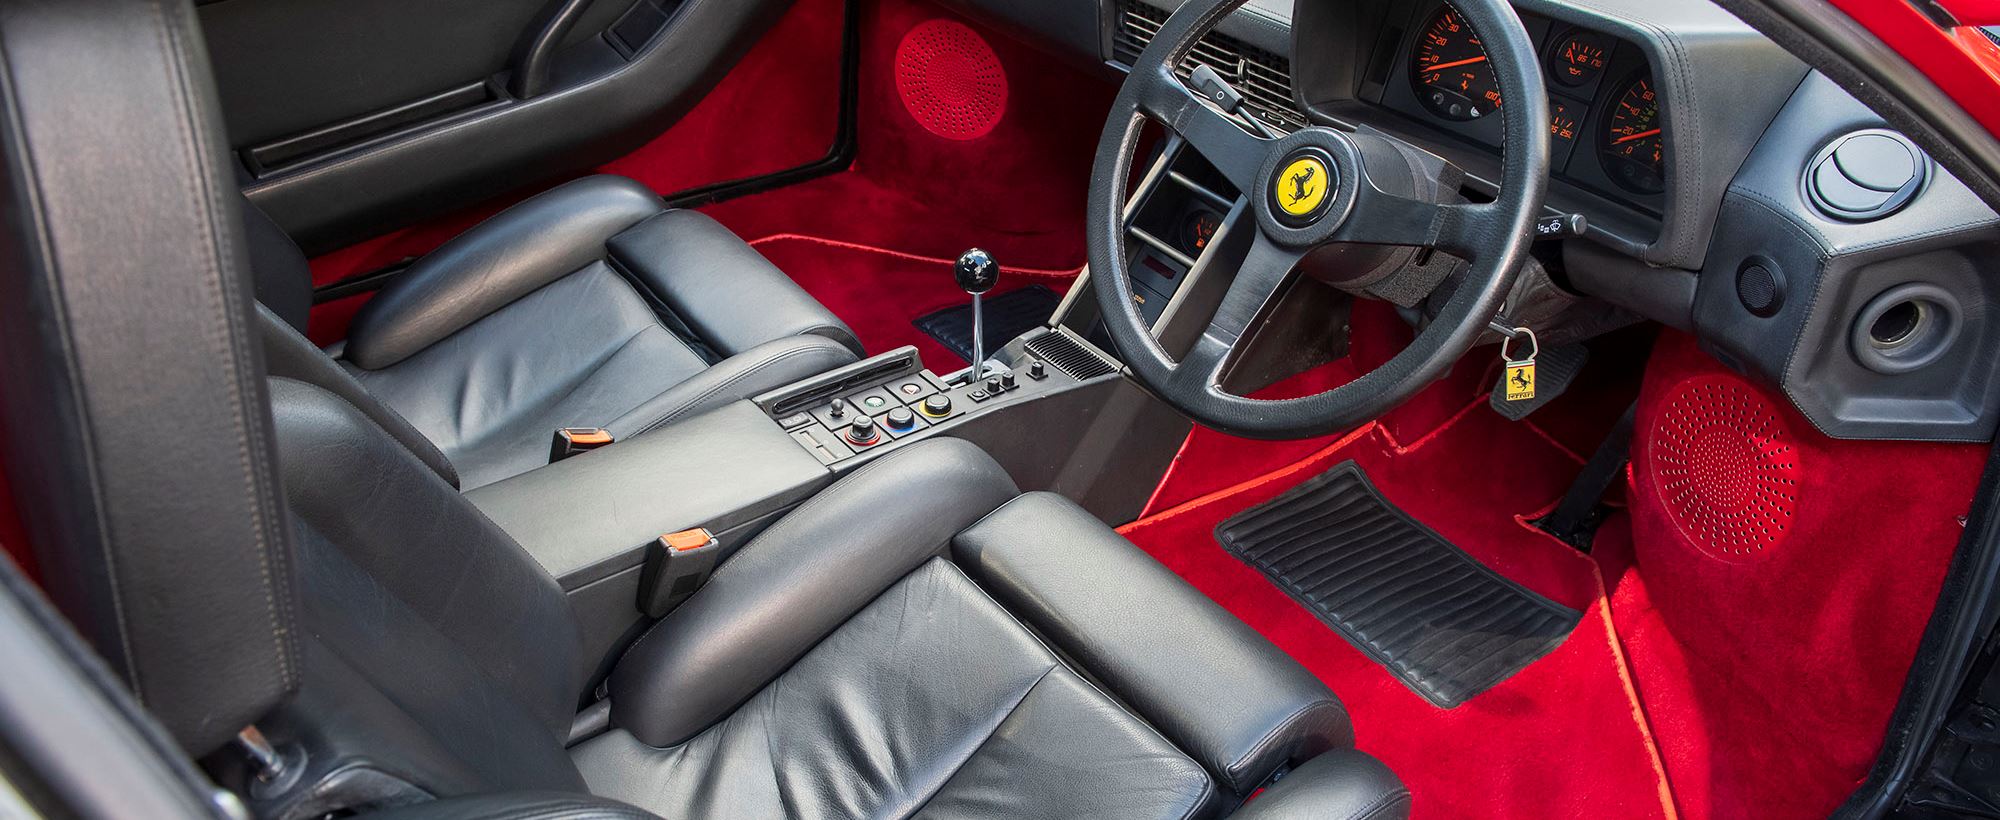 Ferrari Testarossa 014.jpg